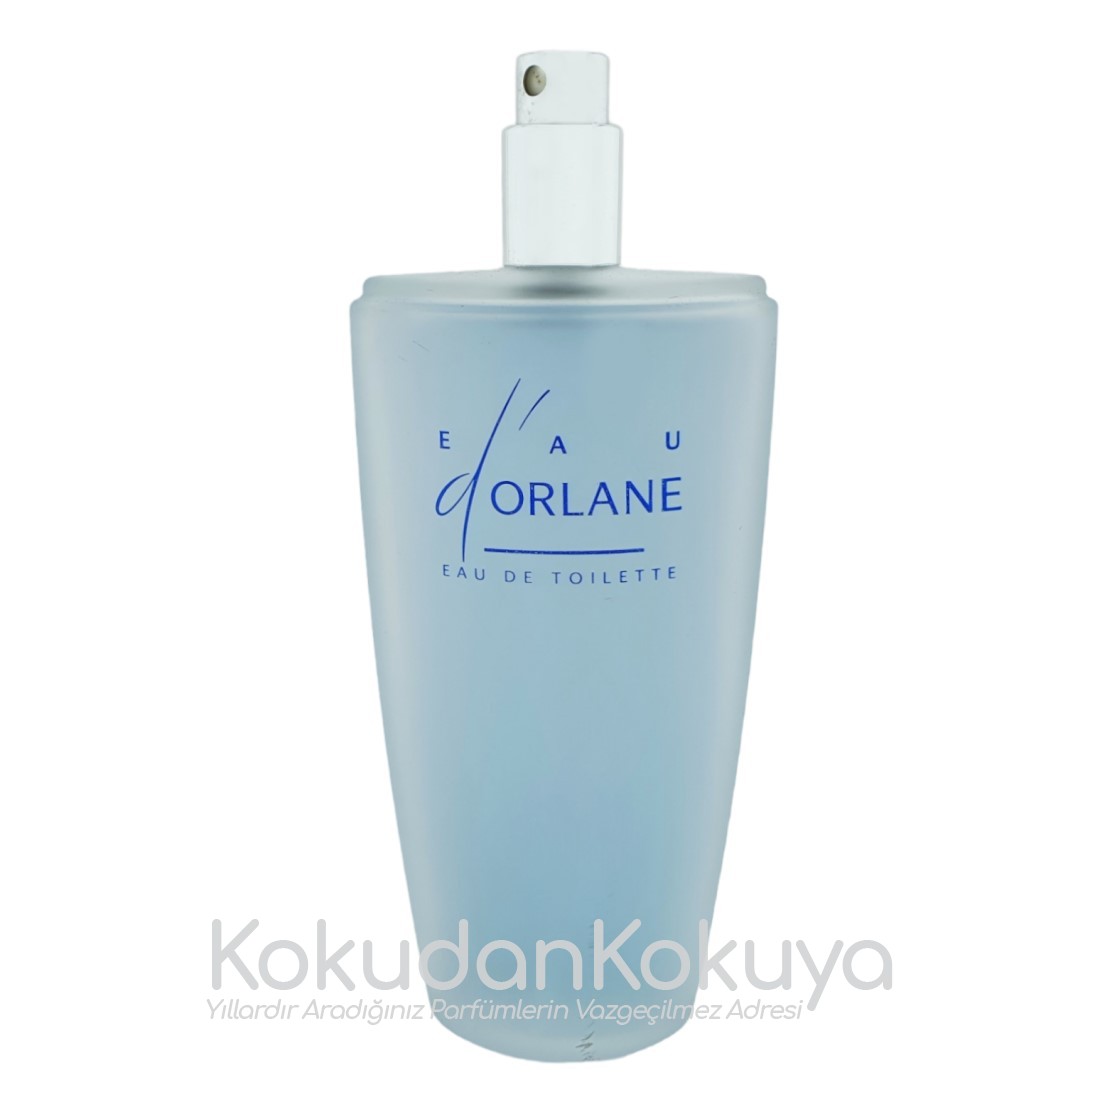 ORLANE Eau D'Orlane (Vintage 1) Parfüm Kadın 100ml Eau De Toilette (EDT) Sprey 